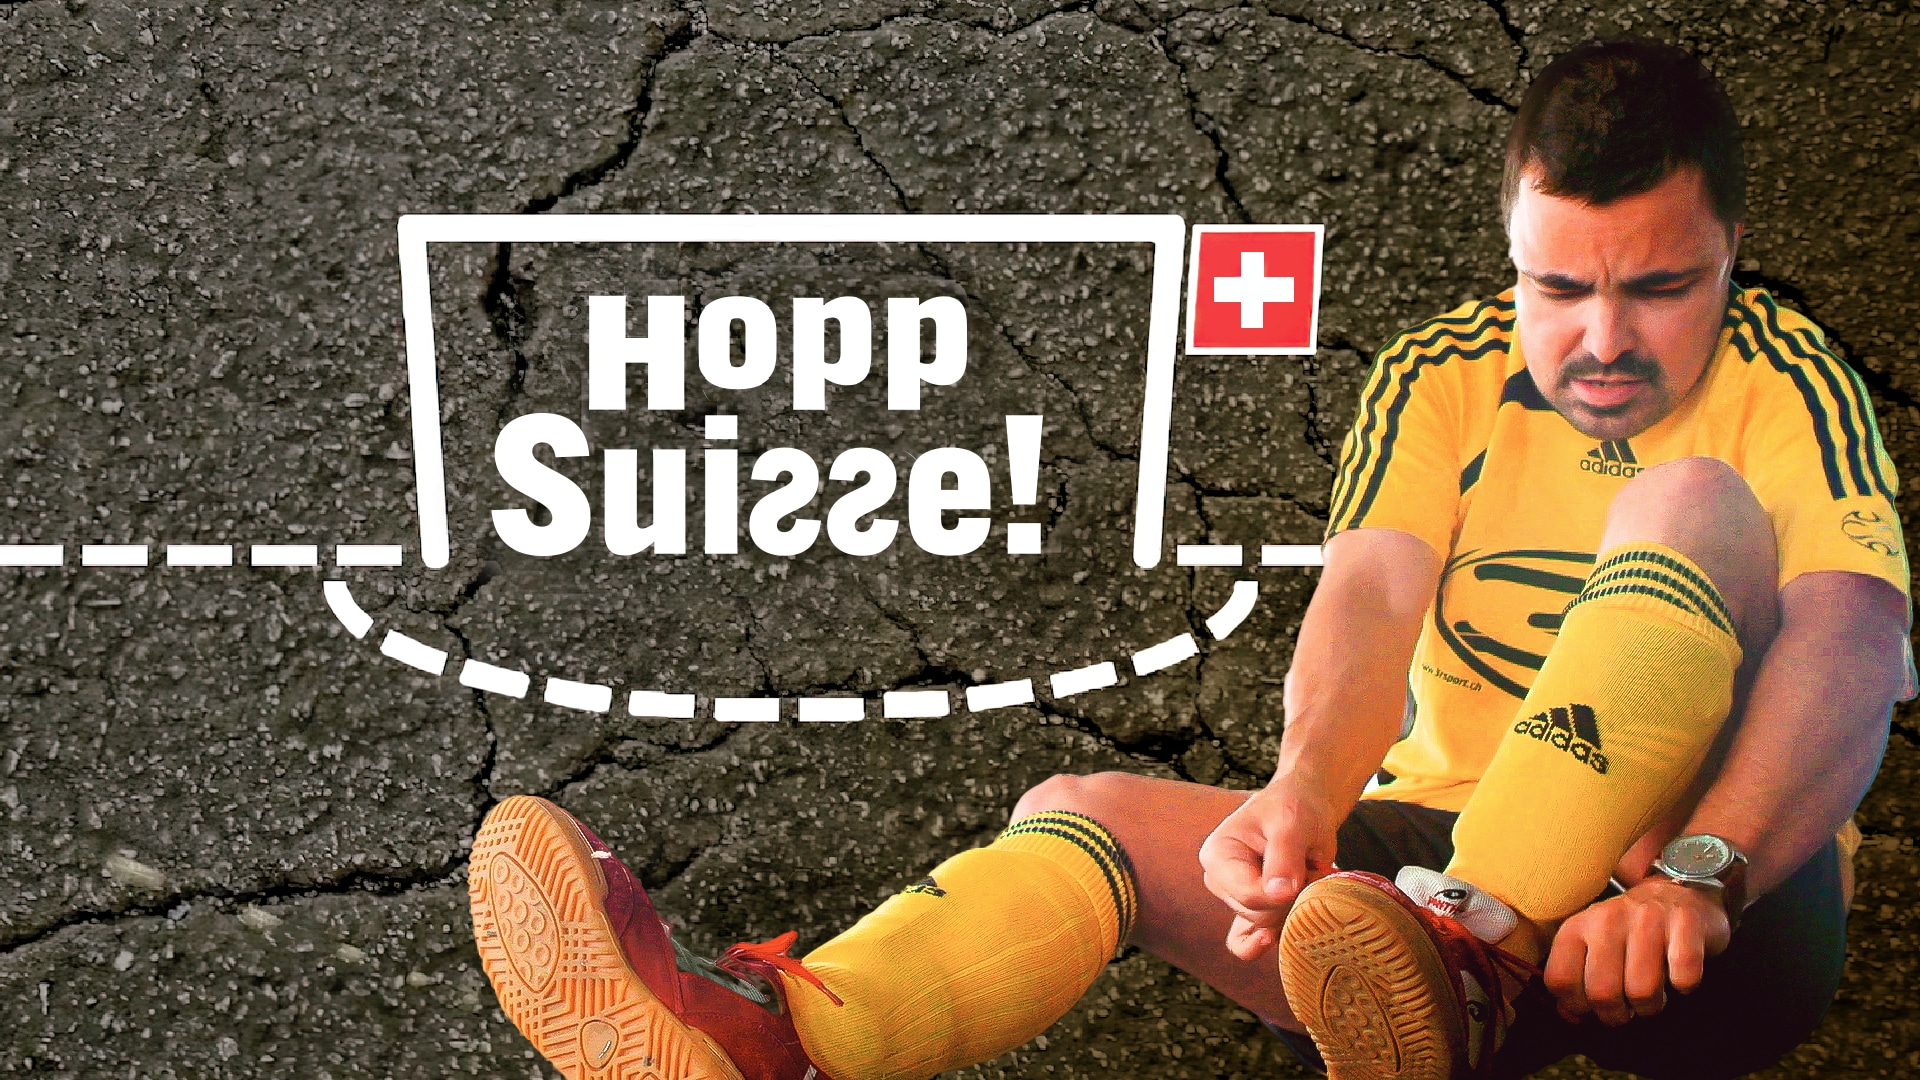 Hopp Suisse!